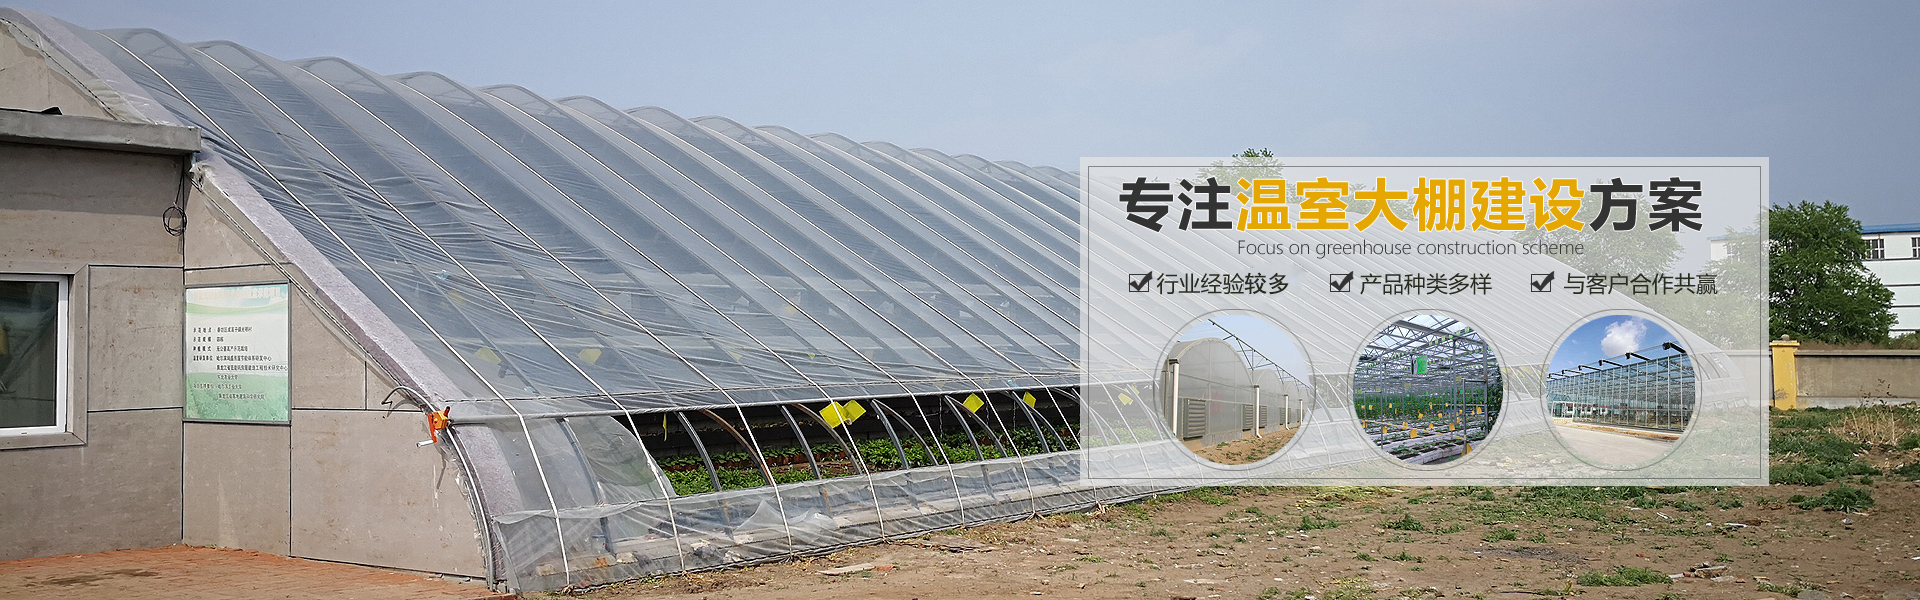 楊凌萊蒽農業科技有限公司